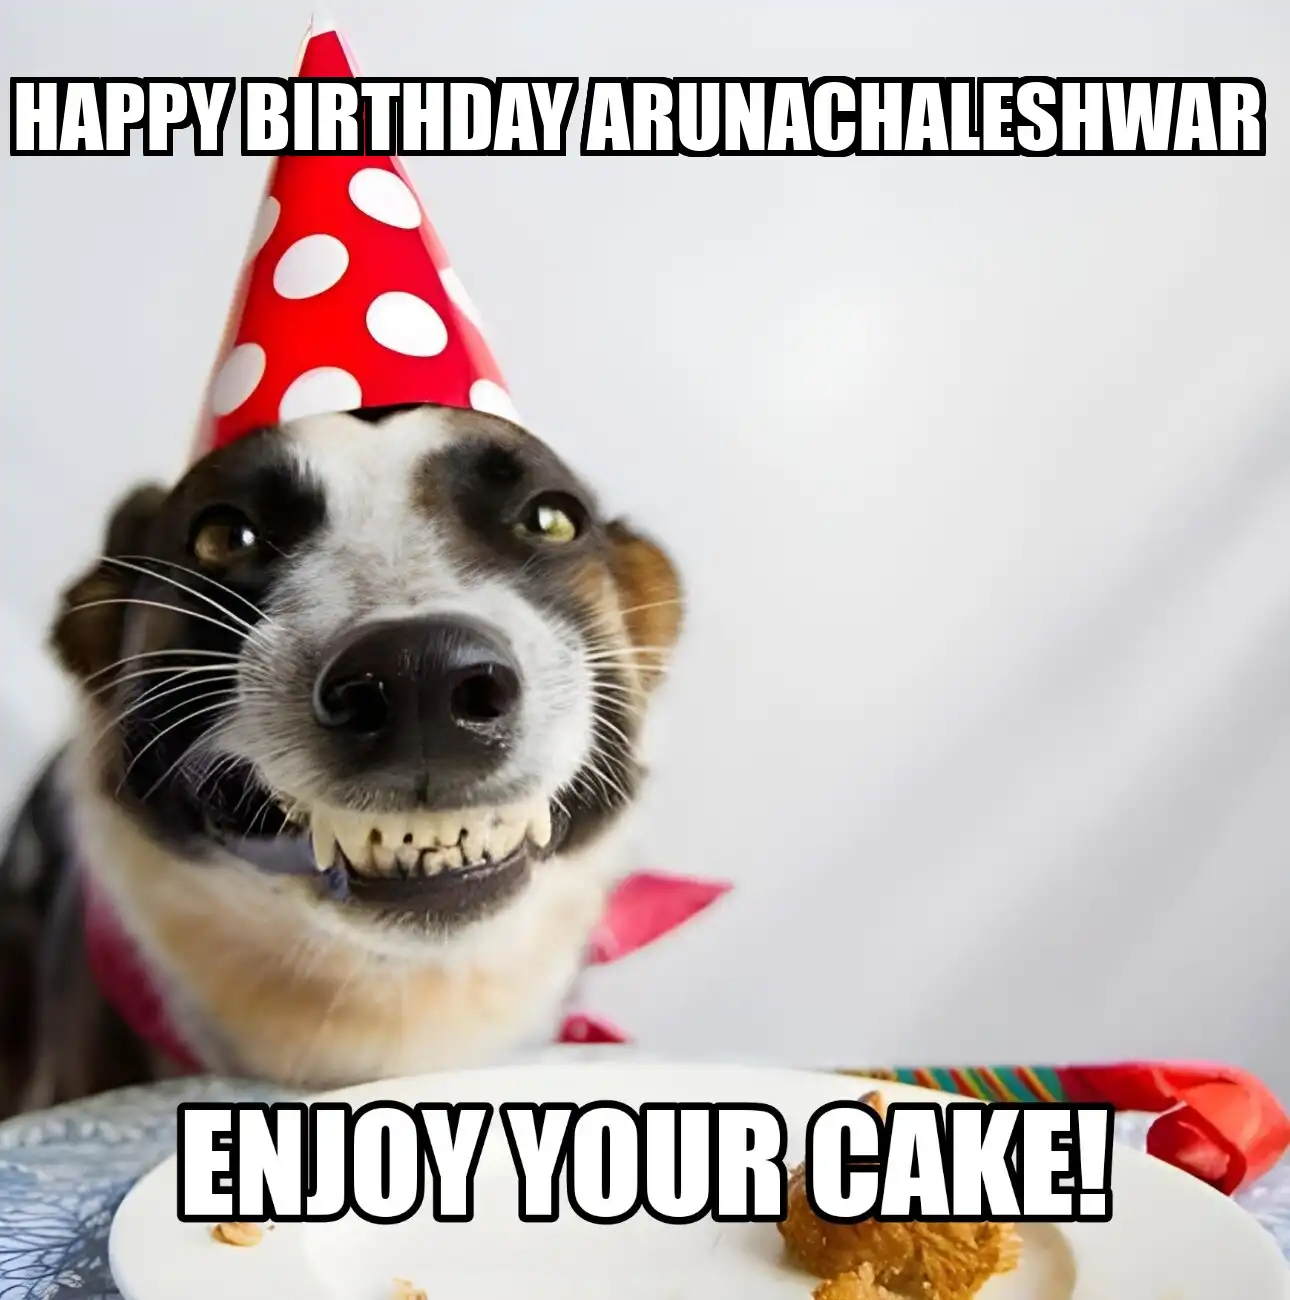 Happy Birthday Arunachaleshwar Enjoy Your Cake Dog Meme